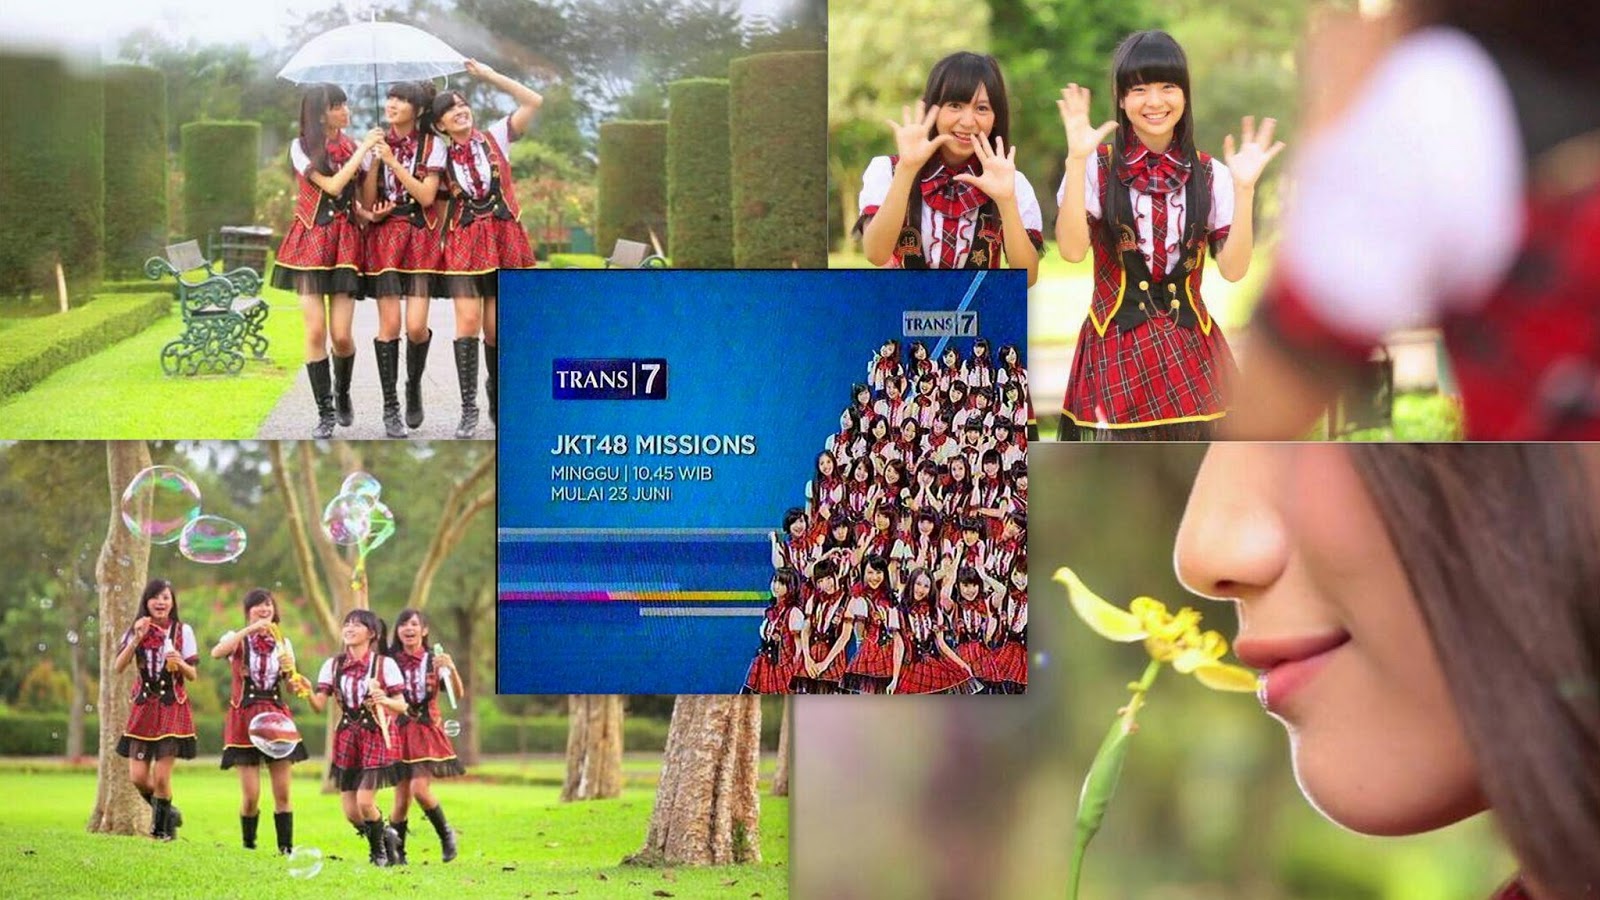 JKT48 Missions Trans 7 Episode 10